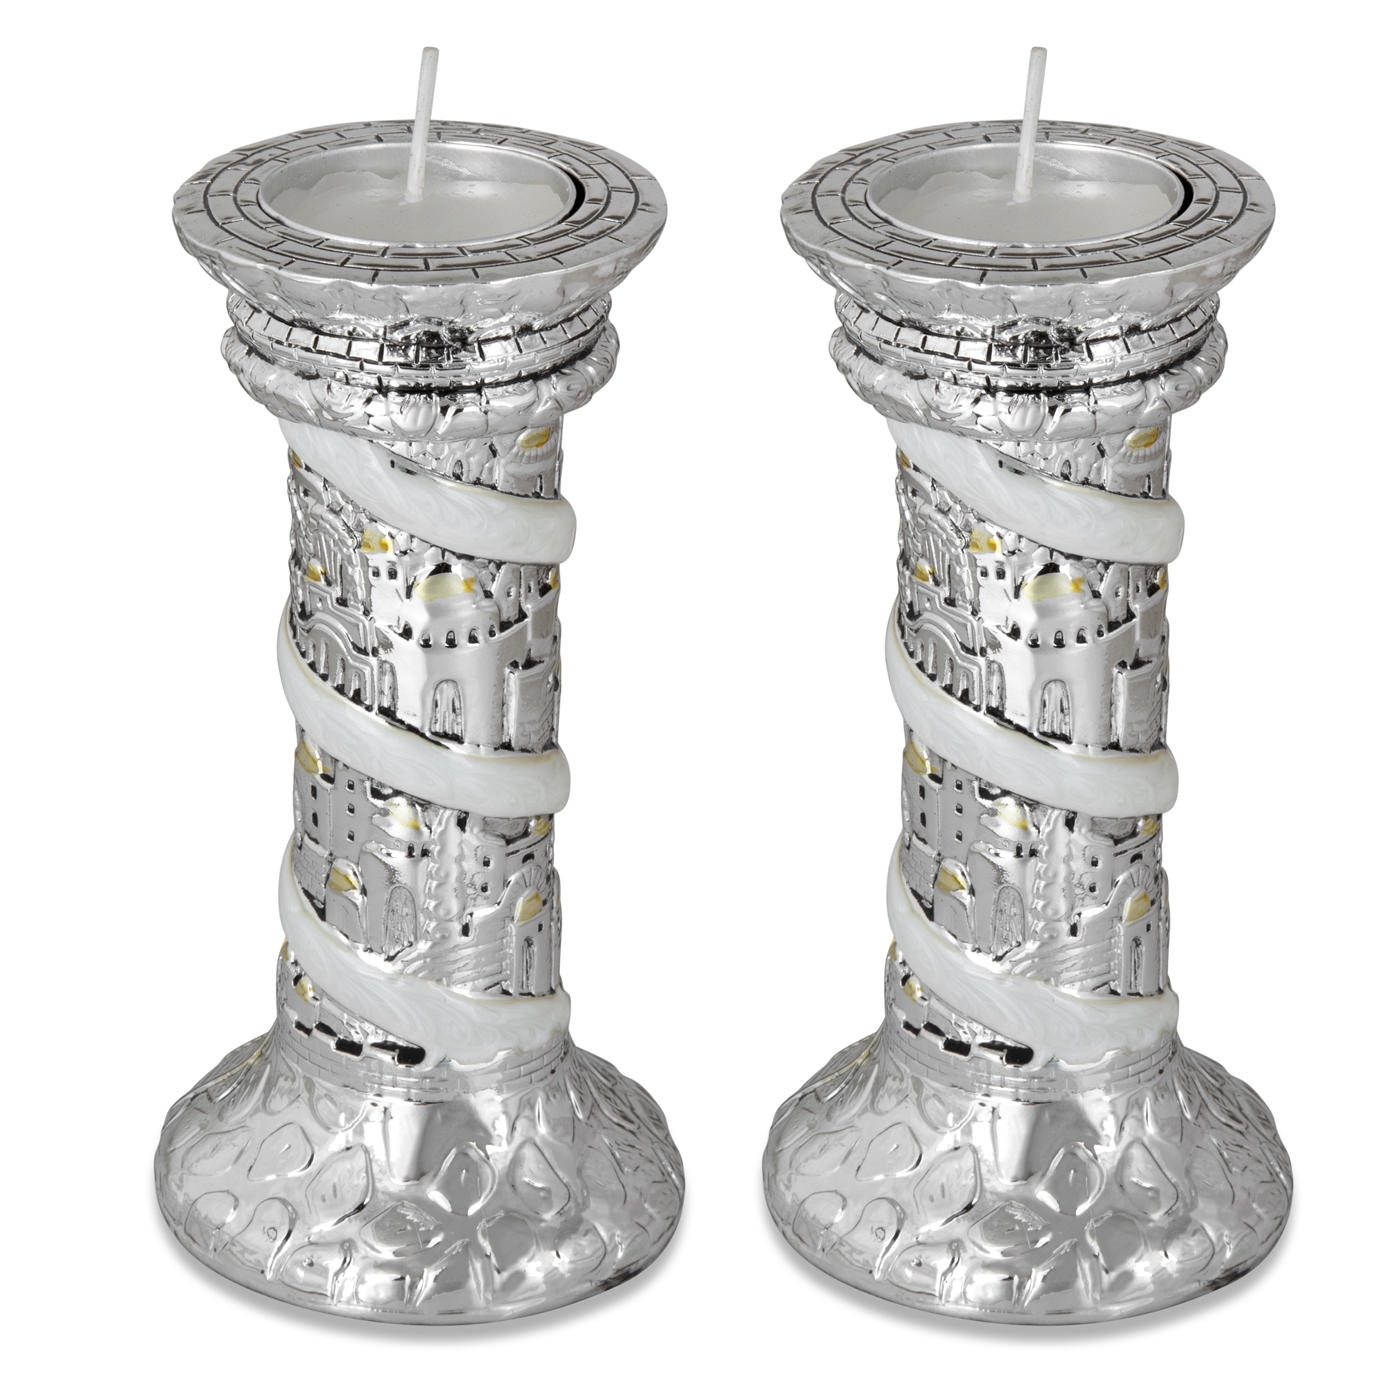 Silver Plated Tealight Candlesticks - Enameled Jerusalem Design - 1